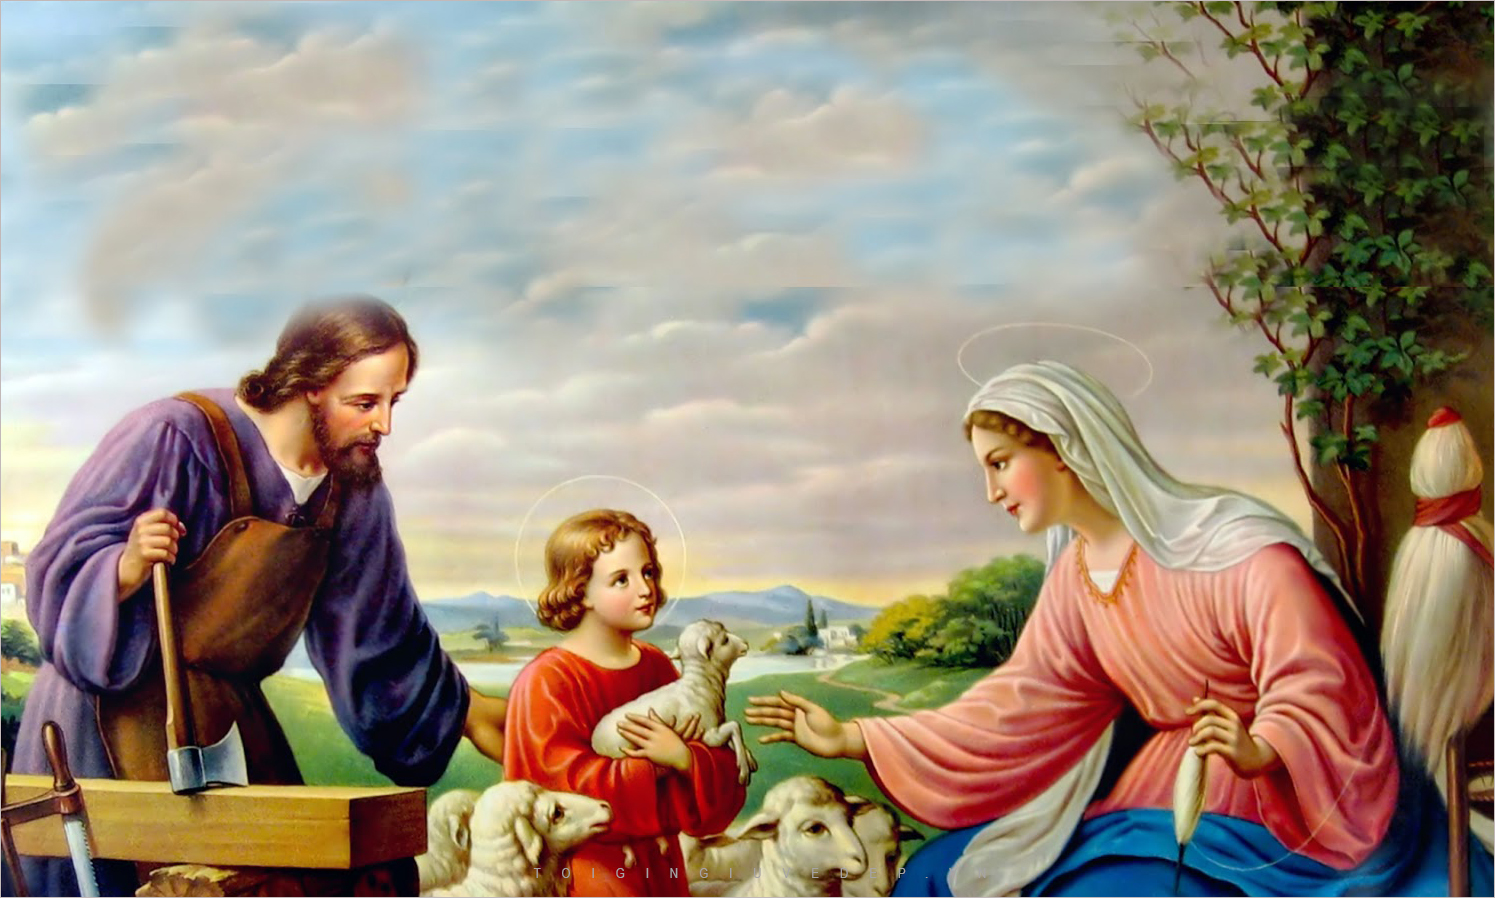 Hình nền Chúa Giêsu Với Hình Nền Hoa Hình ảnh Của Hình Nền Chúa Giêsu  Background Vector để tải xuống miễn phí  Pngtree